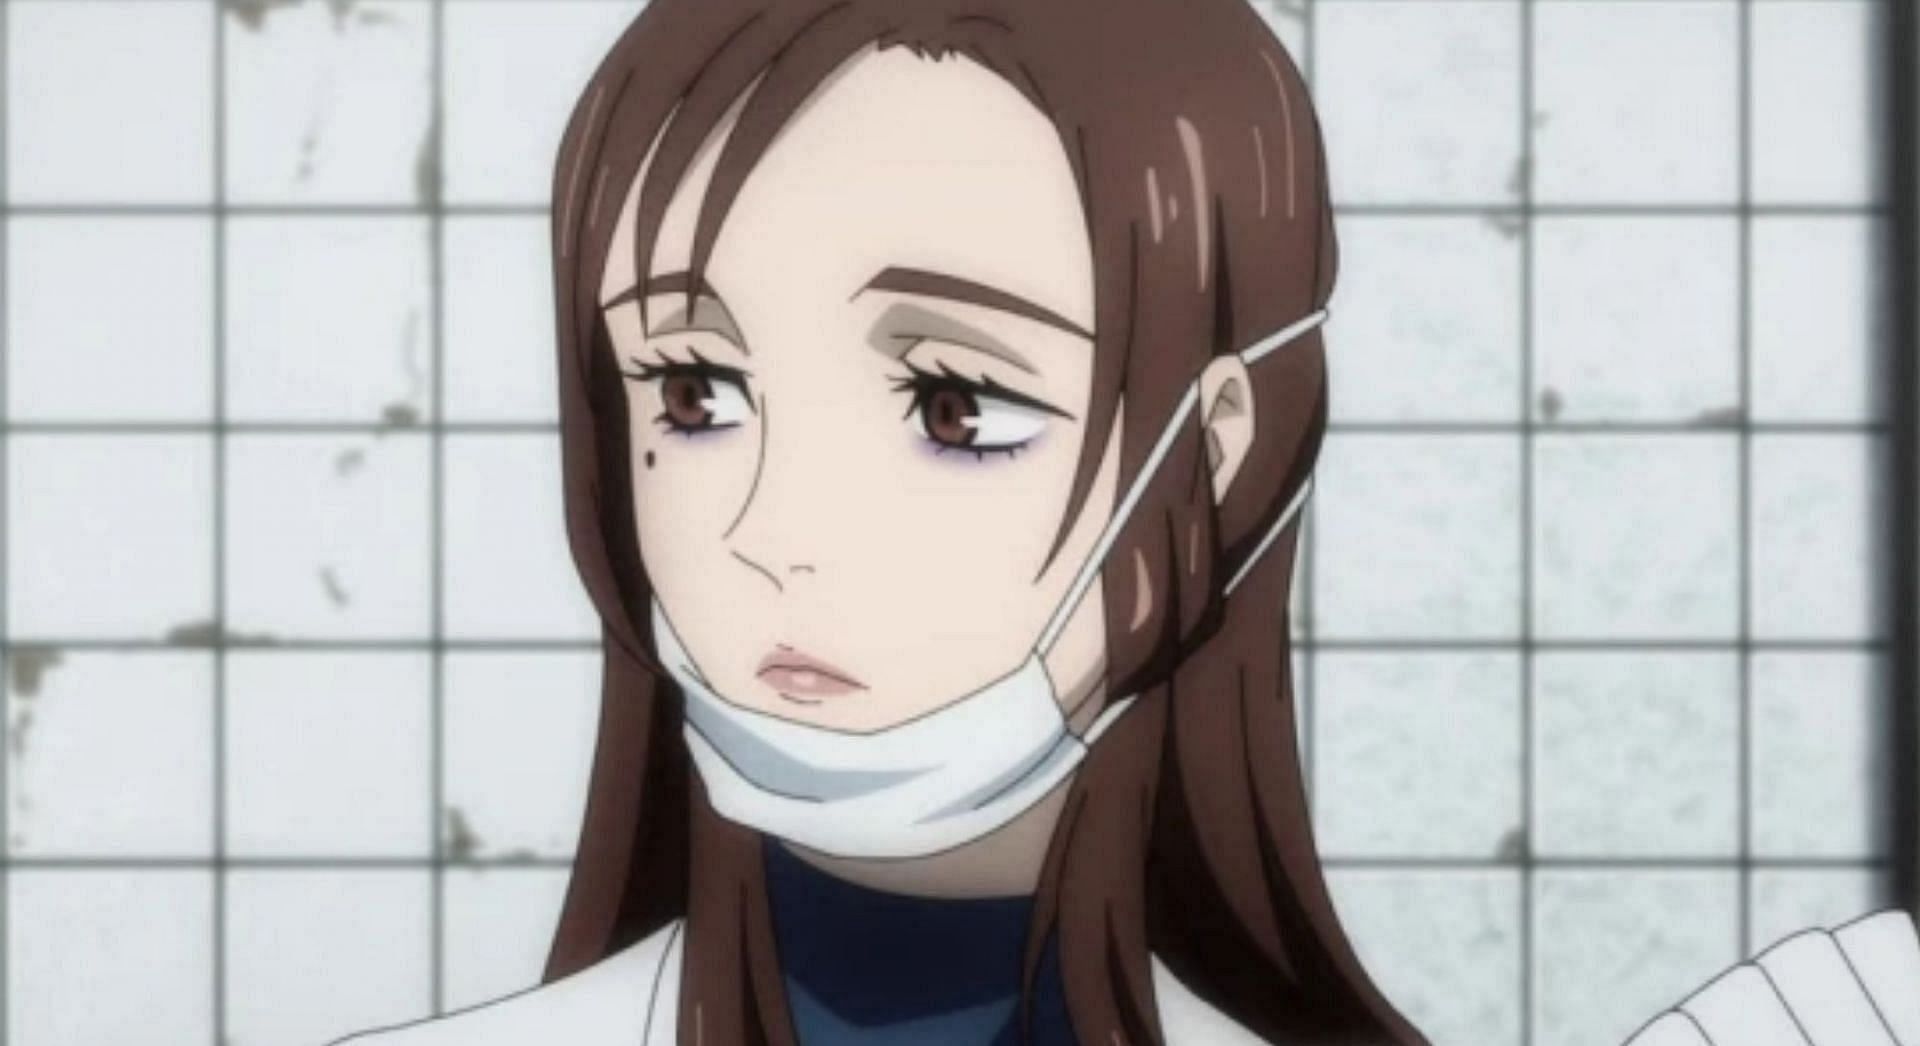 Shoko Ieiri as seen in Jujutsu Kaisen anime (Image via MAPPA)